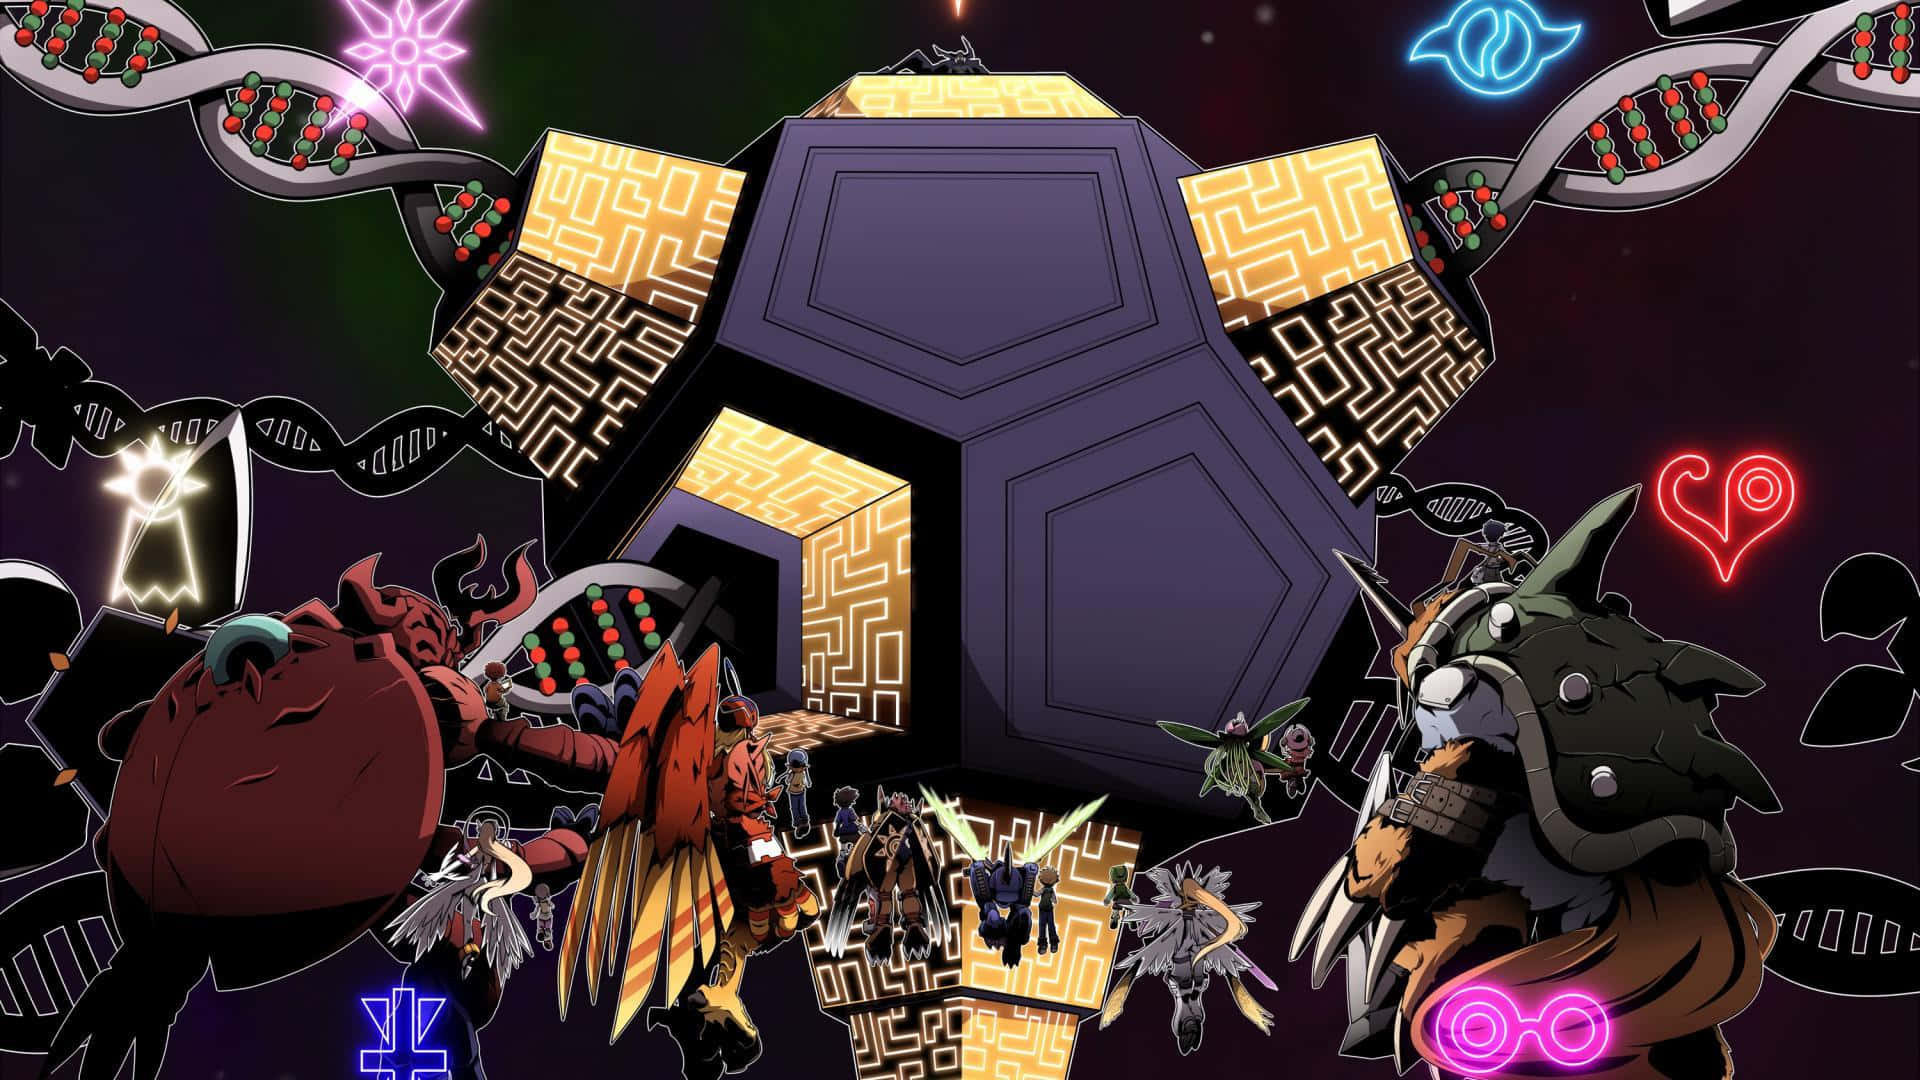 Bildtapet Med Motiv Från Digimon